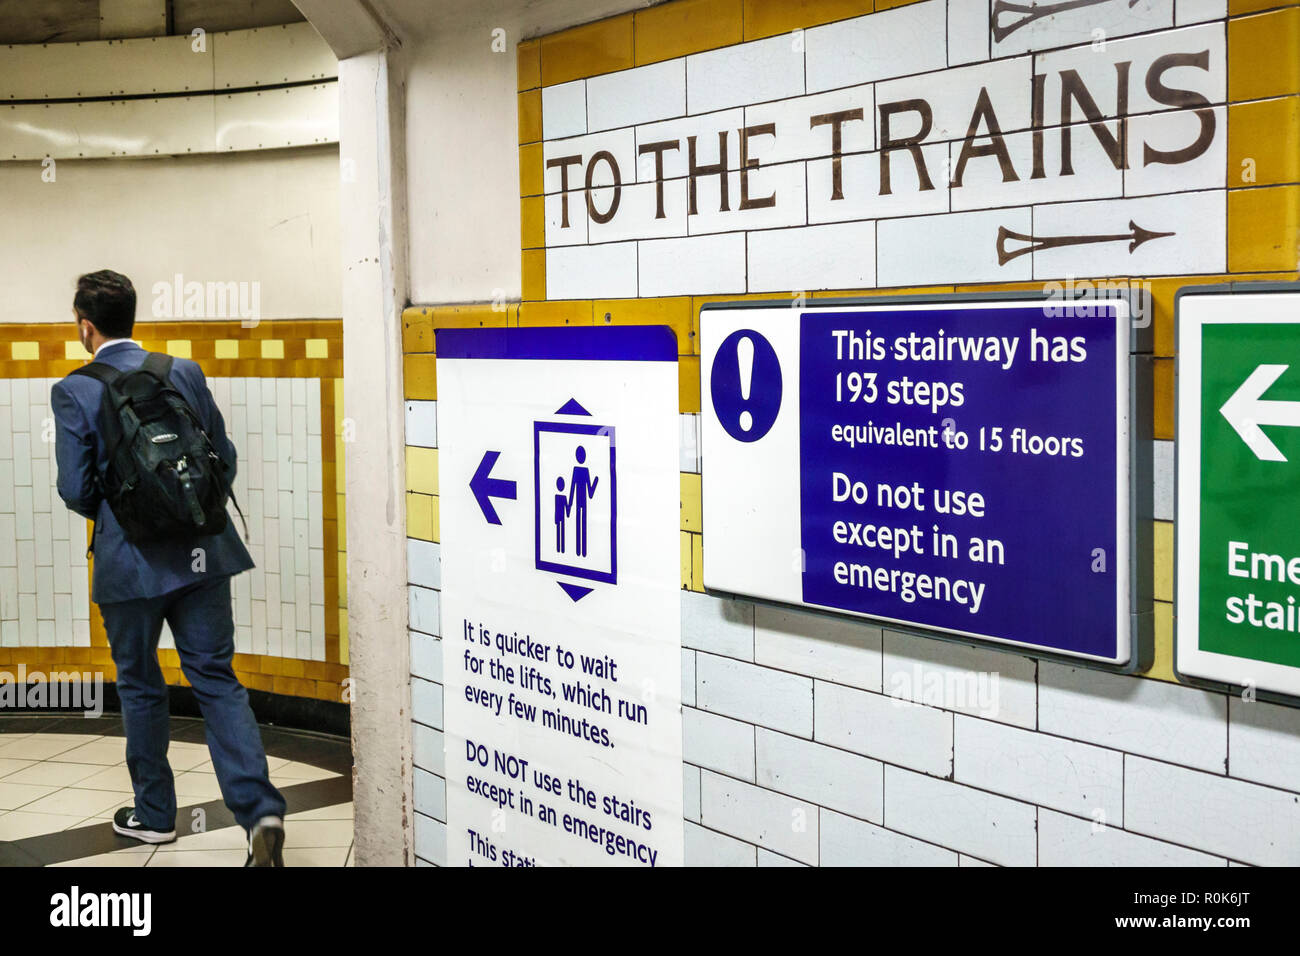 Londra Inghilterra,UK,Covent Garden stazione della metropolitana treno metropolitana, metropolitana, uomo uomo maschio, passeggeri passeggeri motociclisti, penduter, segnali di avvertimento, emerg Foto Stock